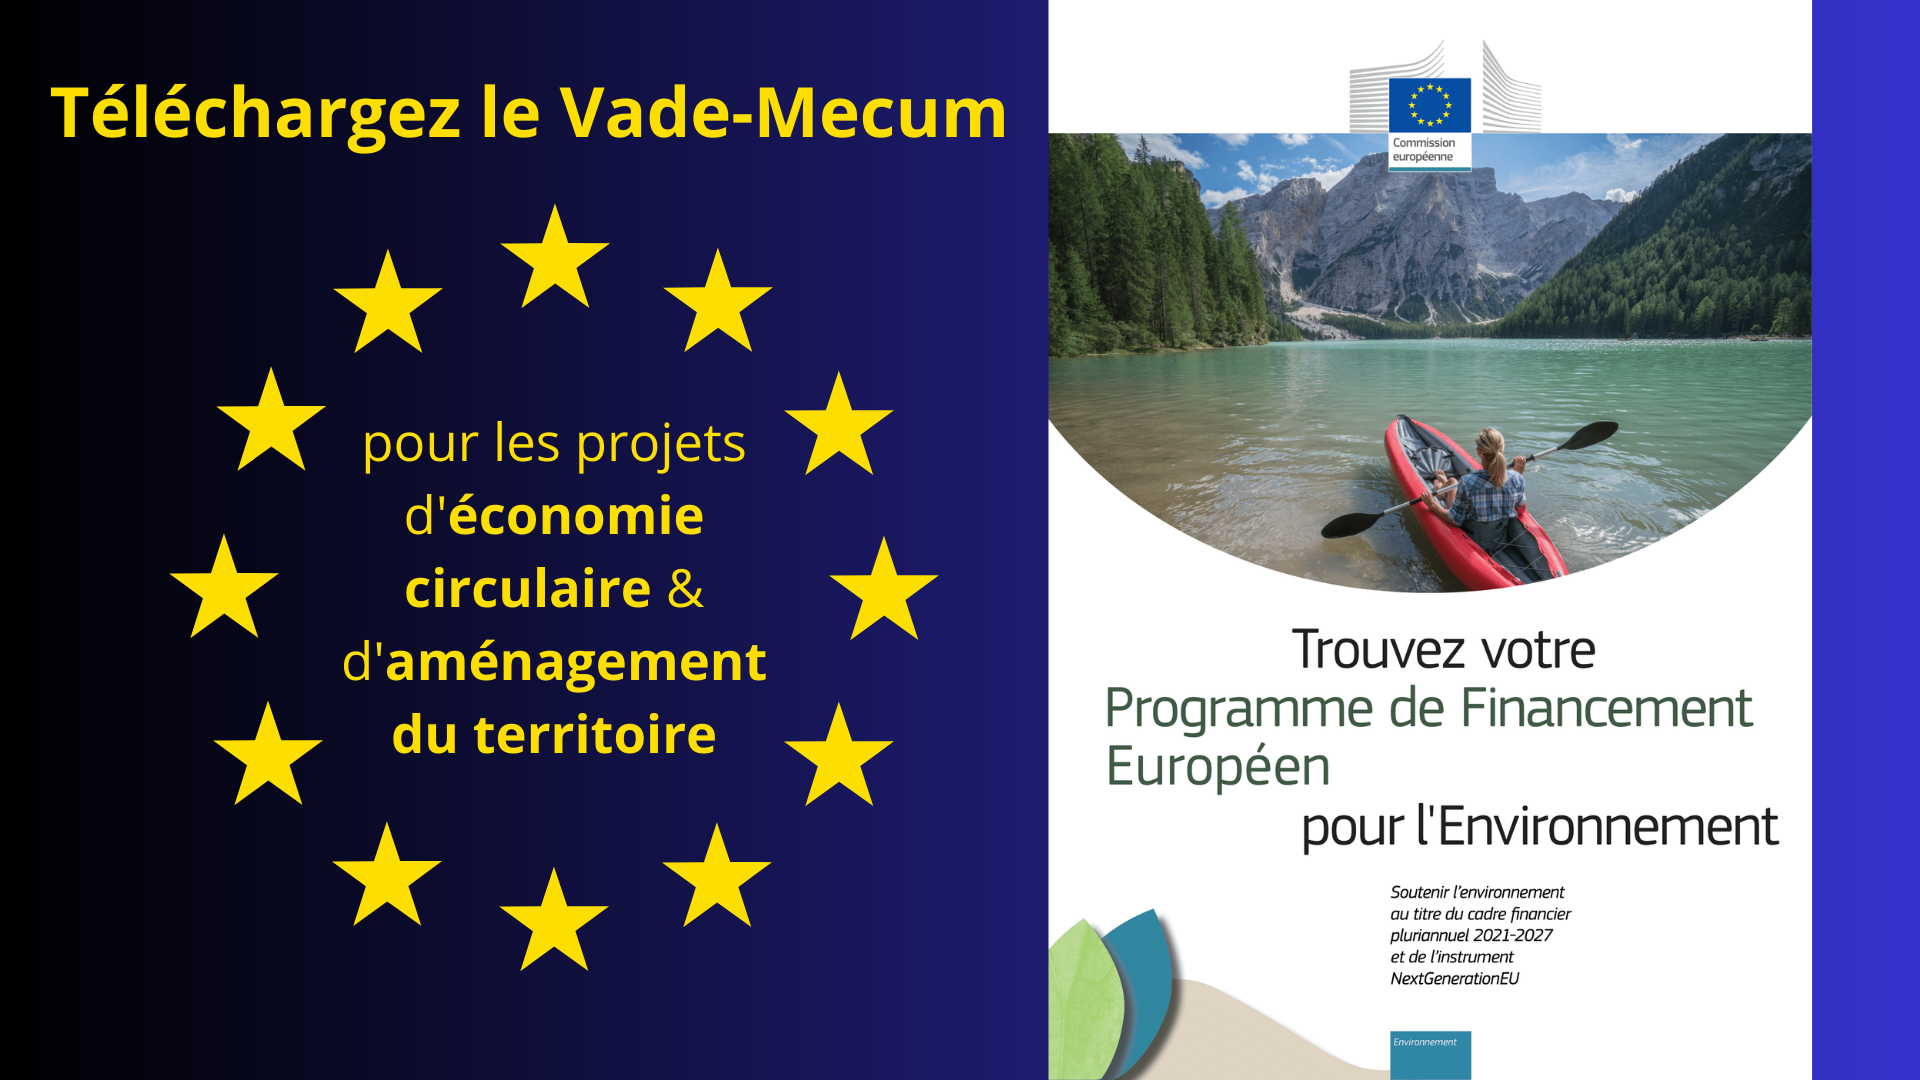 La Commission européenne a produit un Vade-Mecum des financements européens pour les projets environnementaux, d'économie circulaire et d'aménagement du territoire